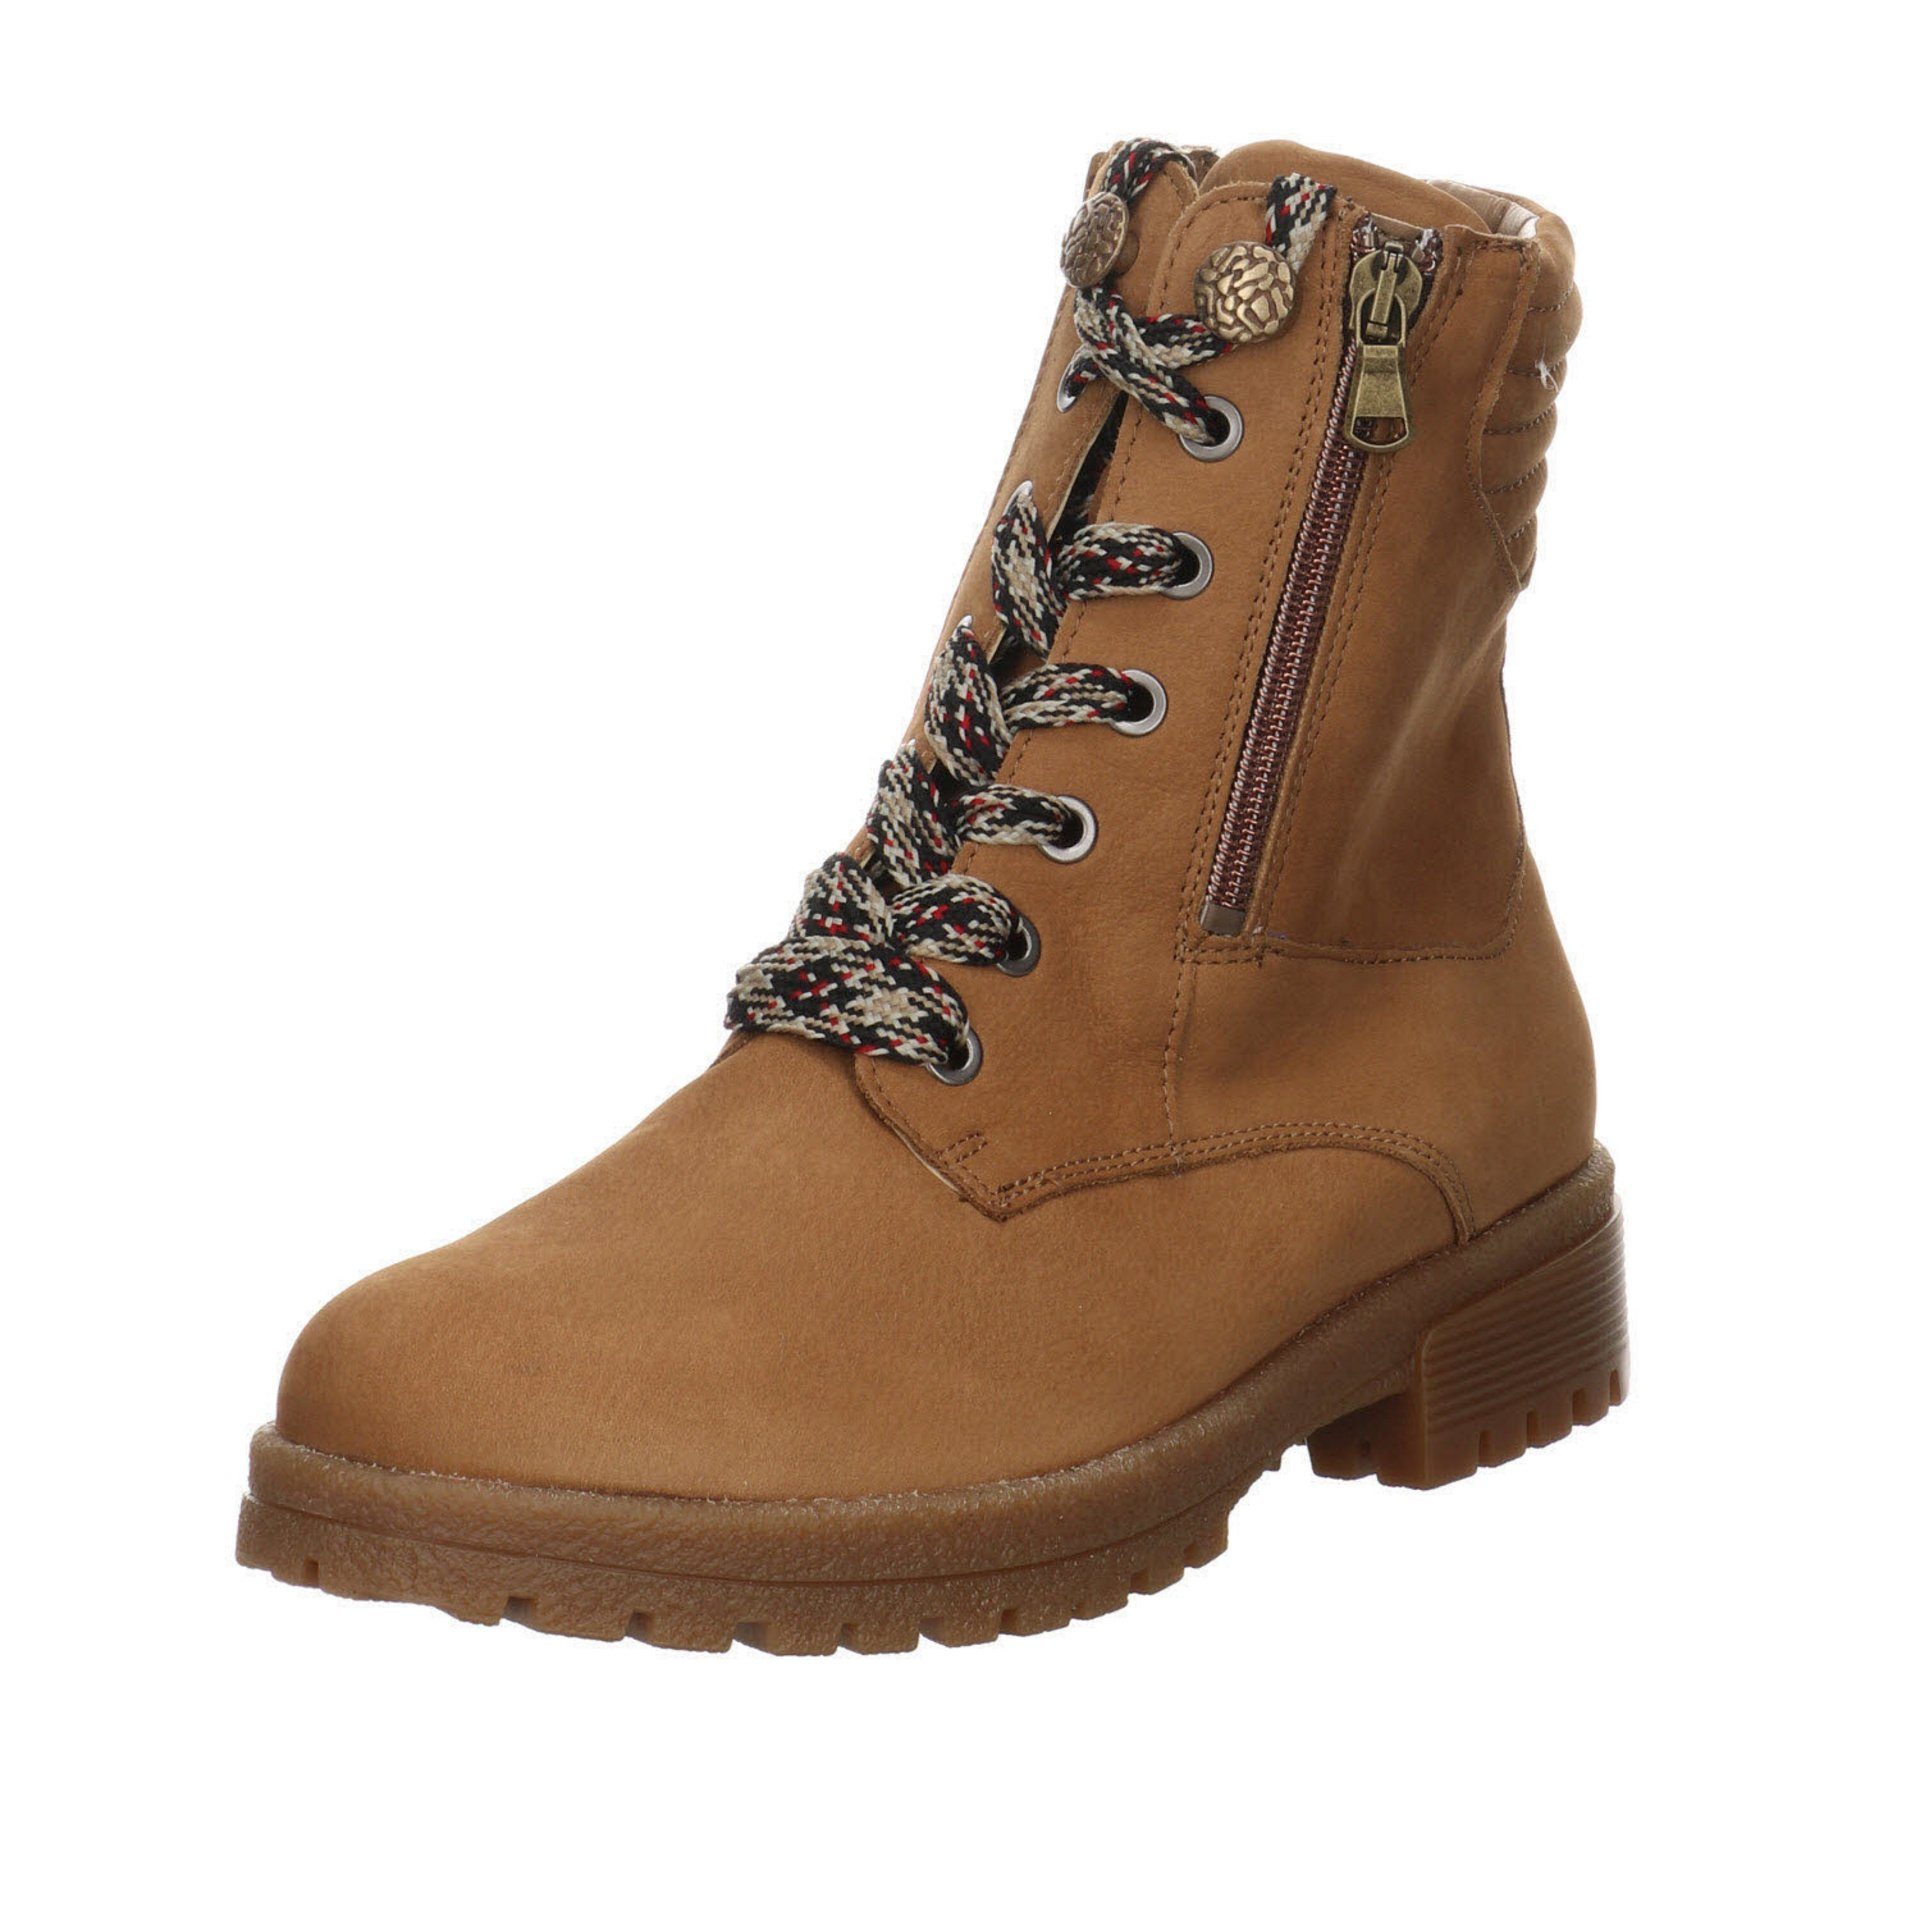 Waldläufer »Damen Stiefel Schuhe Bonny Boots Elegant Freizeit« Stiefel  Nubukleder online kaufen | OTTO